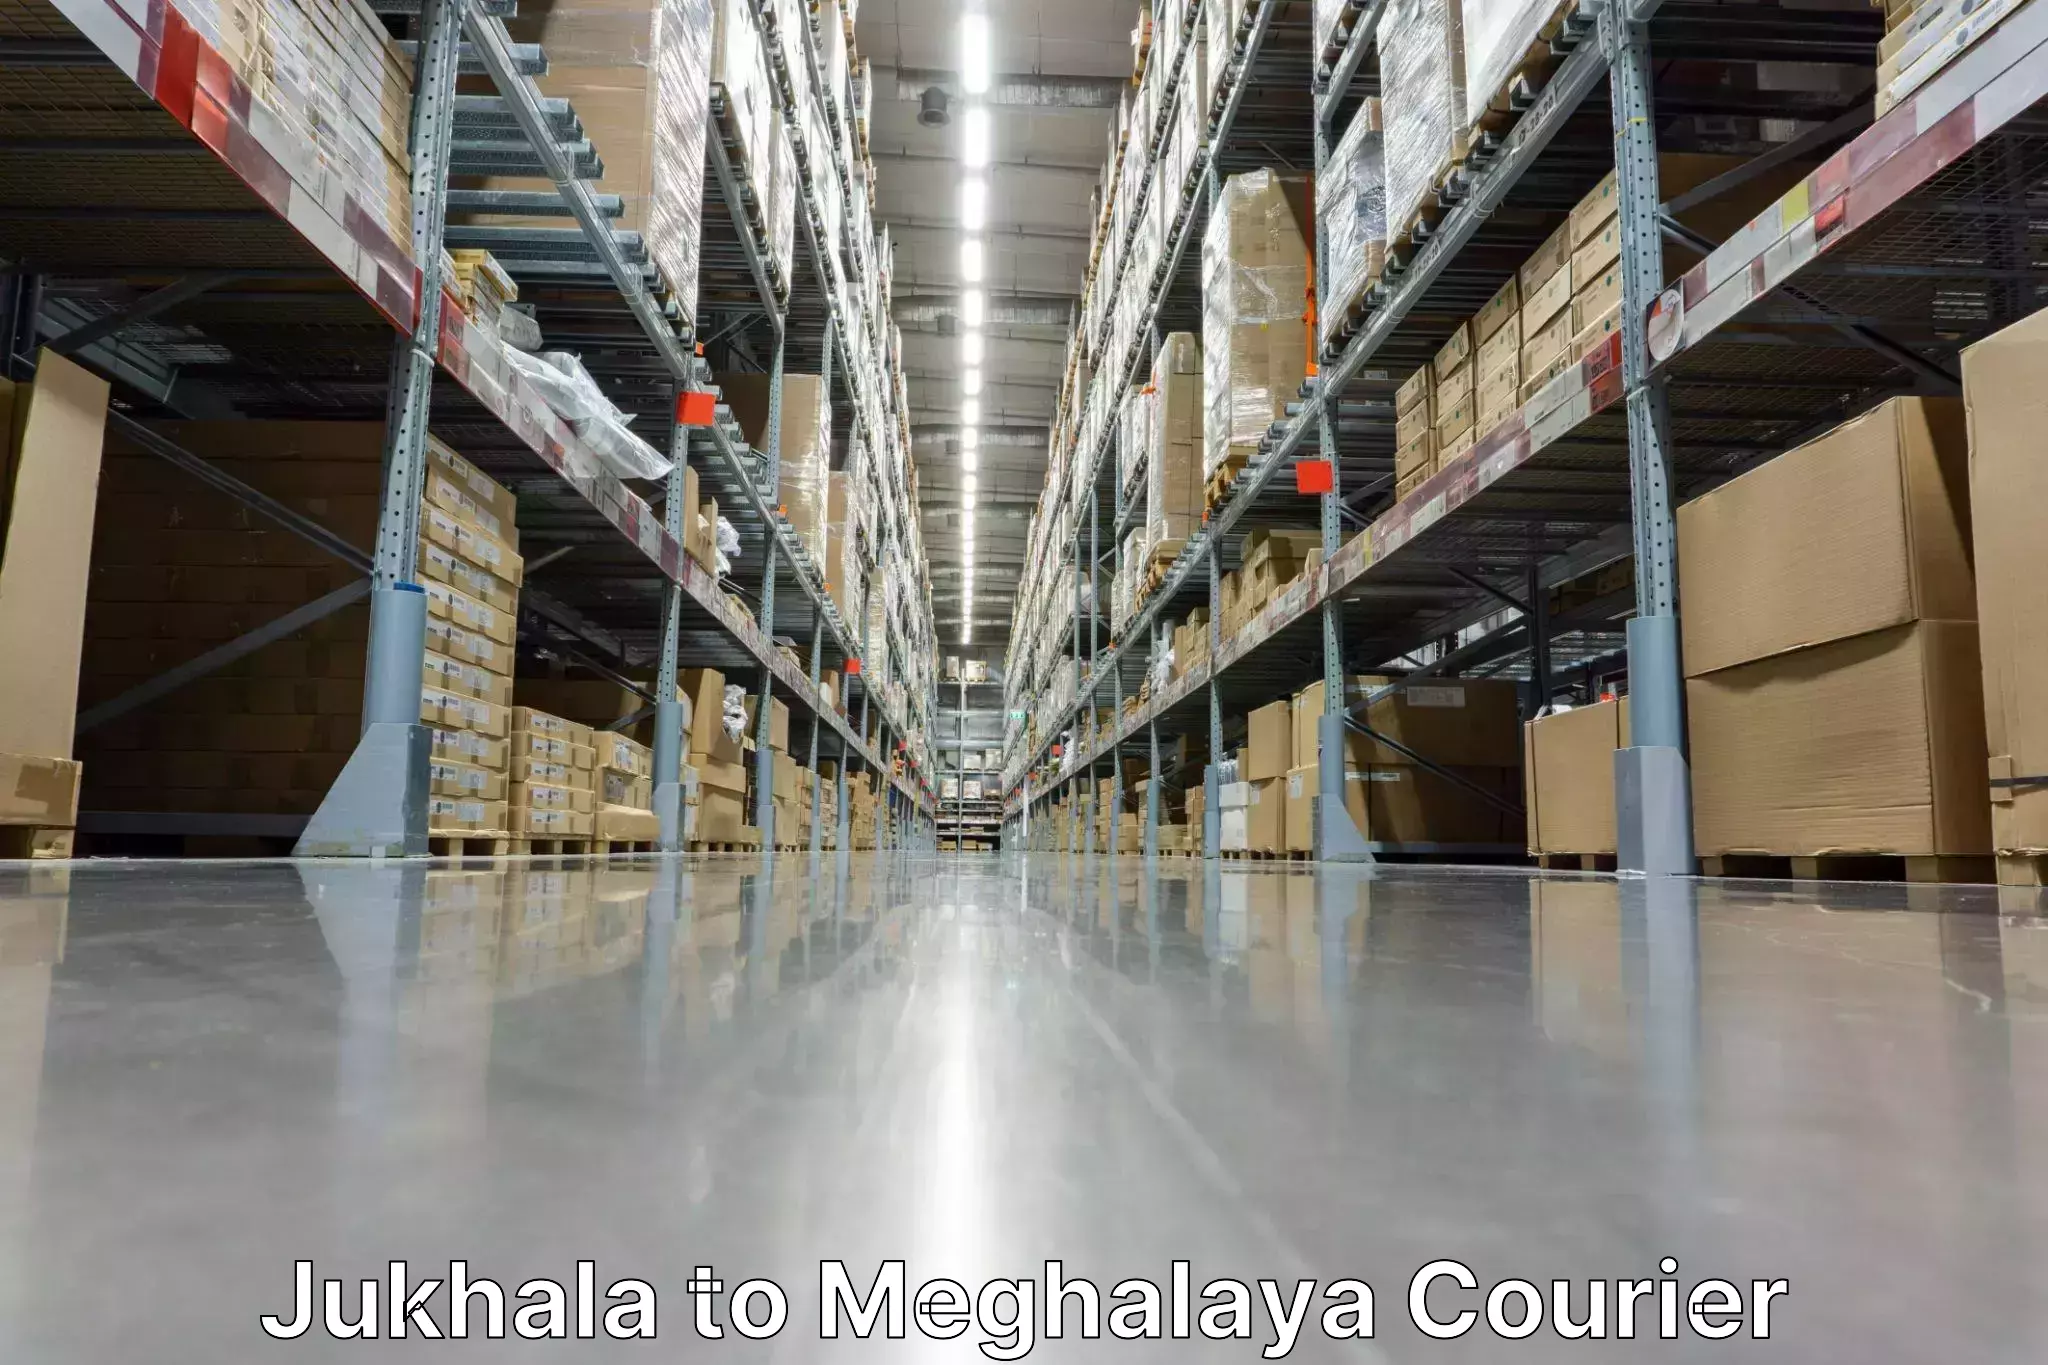 Online shipping calculator Jukhala to Meghalaya